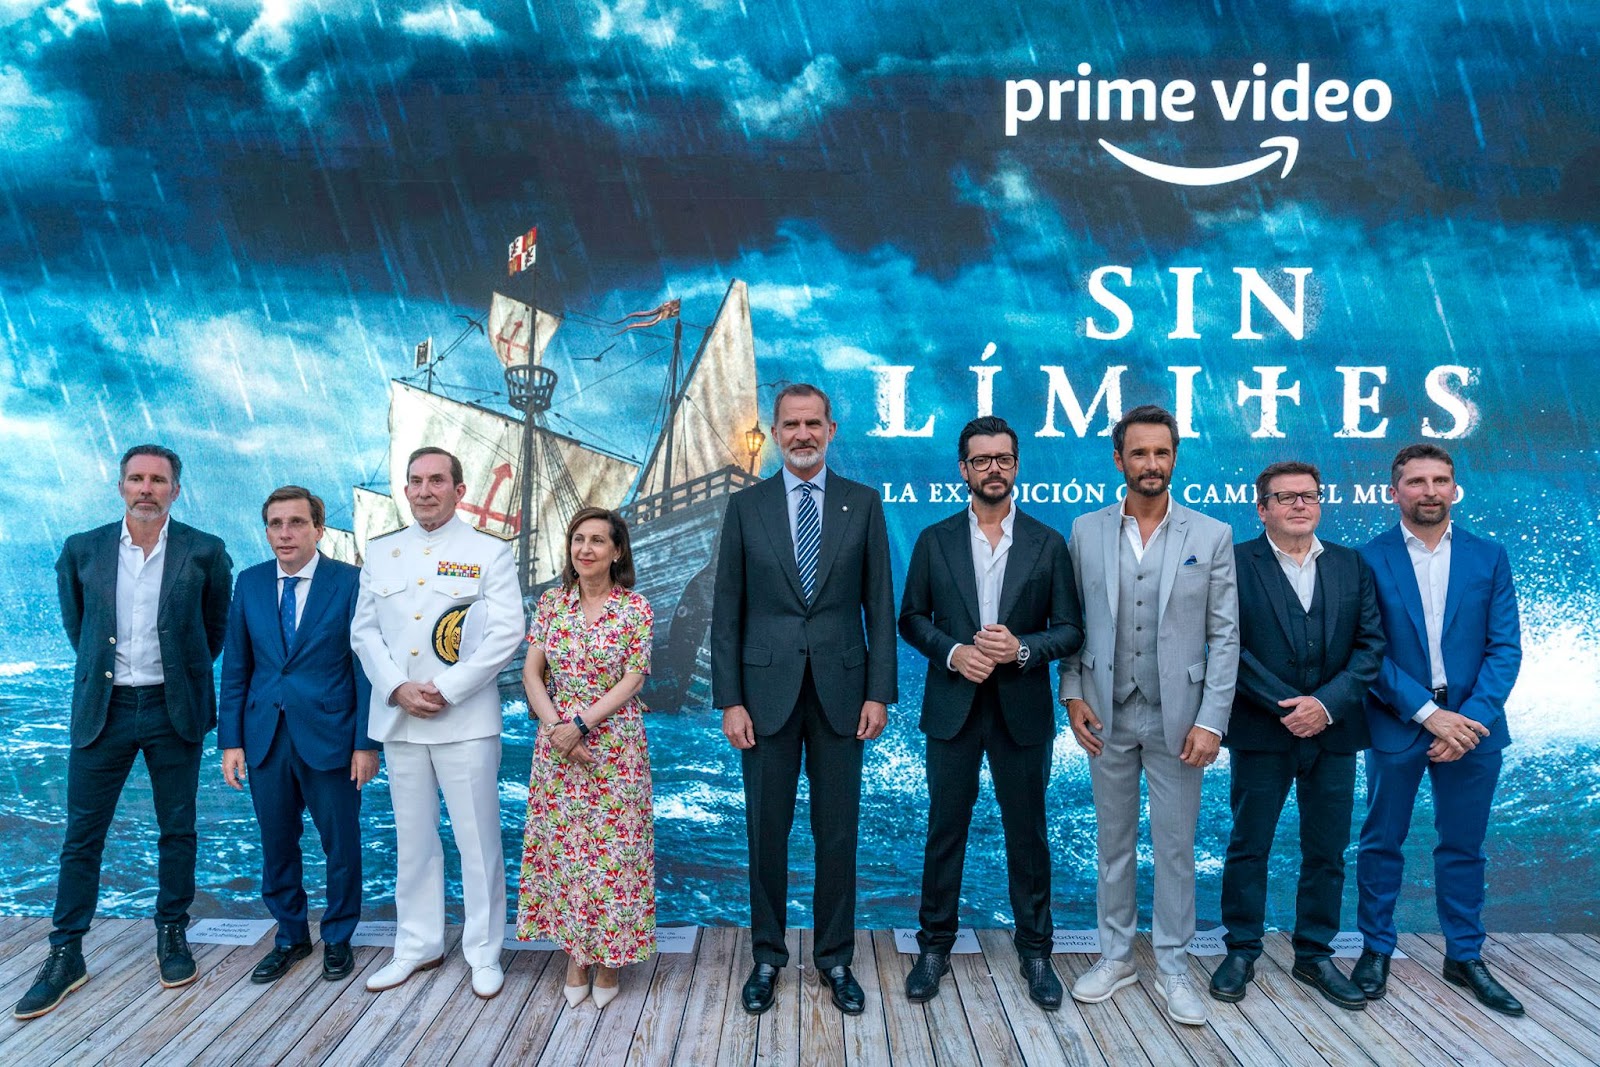 El Rey Felipe VI asiste a la premiere de la miniserie de Prime Video 'Sin límites' en Madrid